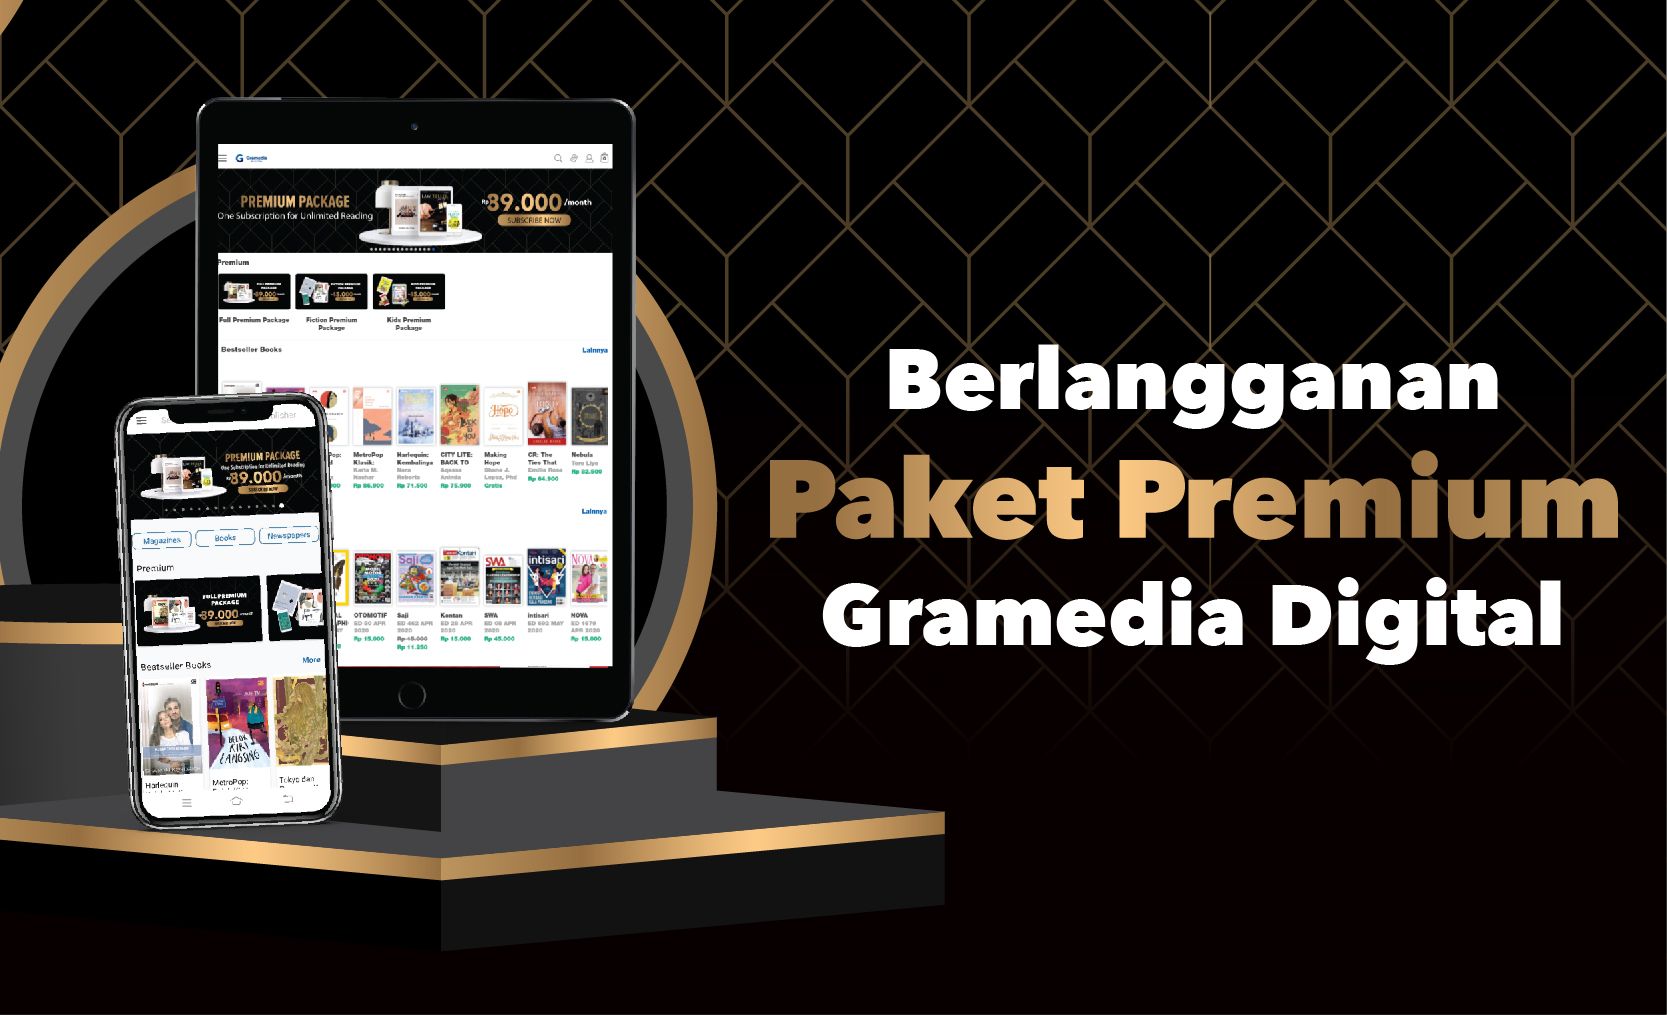 Berlangganan Paket Premium Gramedia Digital Sekarang Bisa Lewat Gramedia.com!